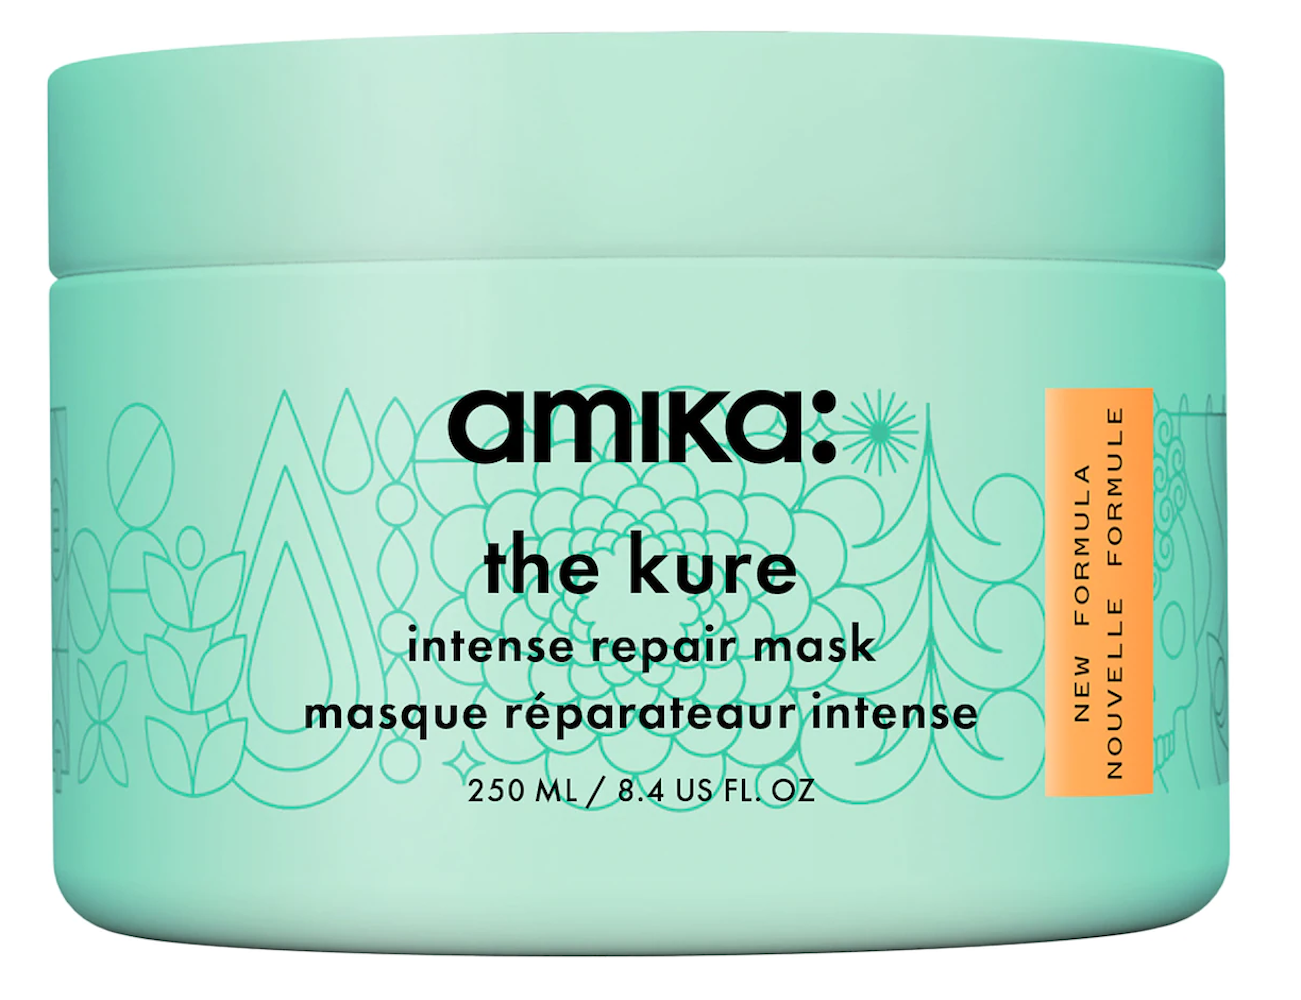 Amika The Kure mask